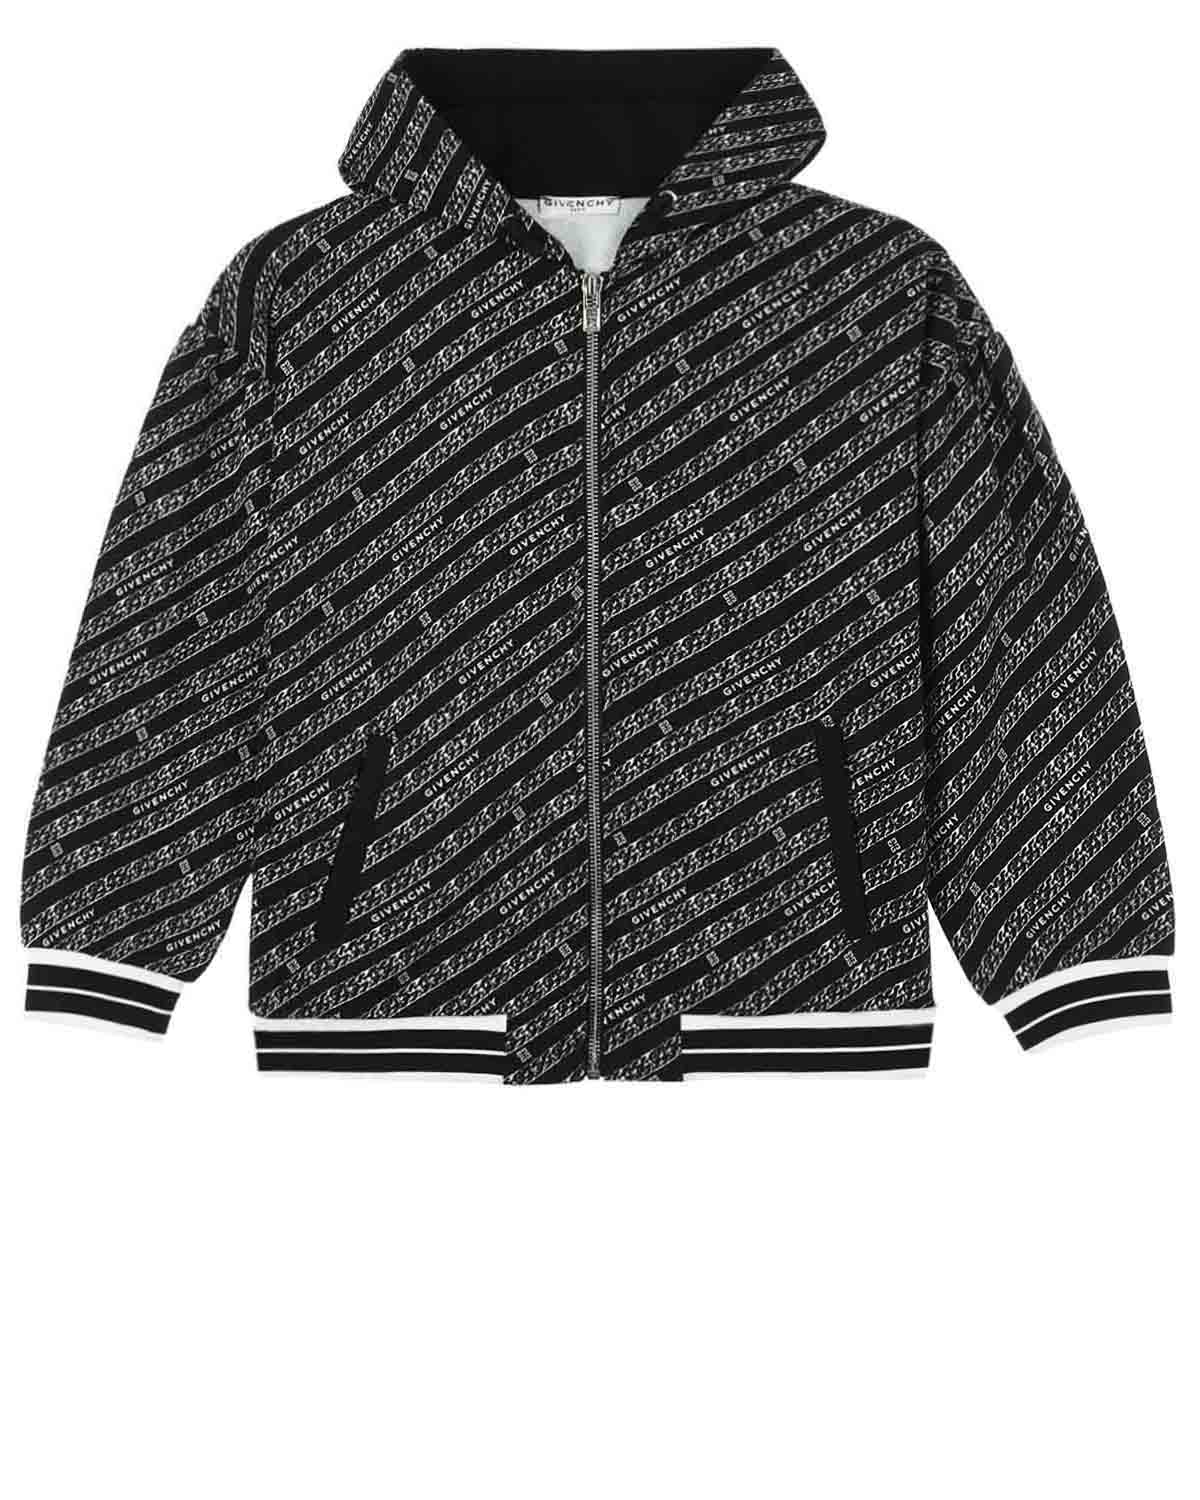 Спортивная куртка с принтом "цепи" Givenchy детская, размер 116, цвет мультиколор